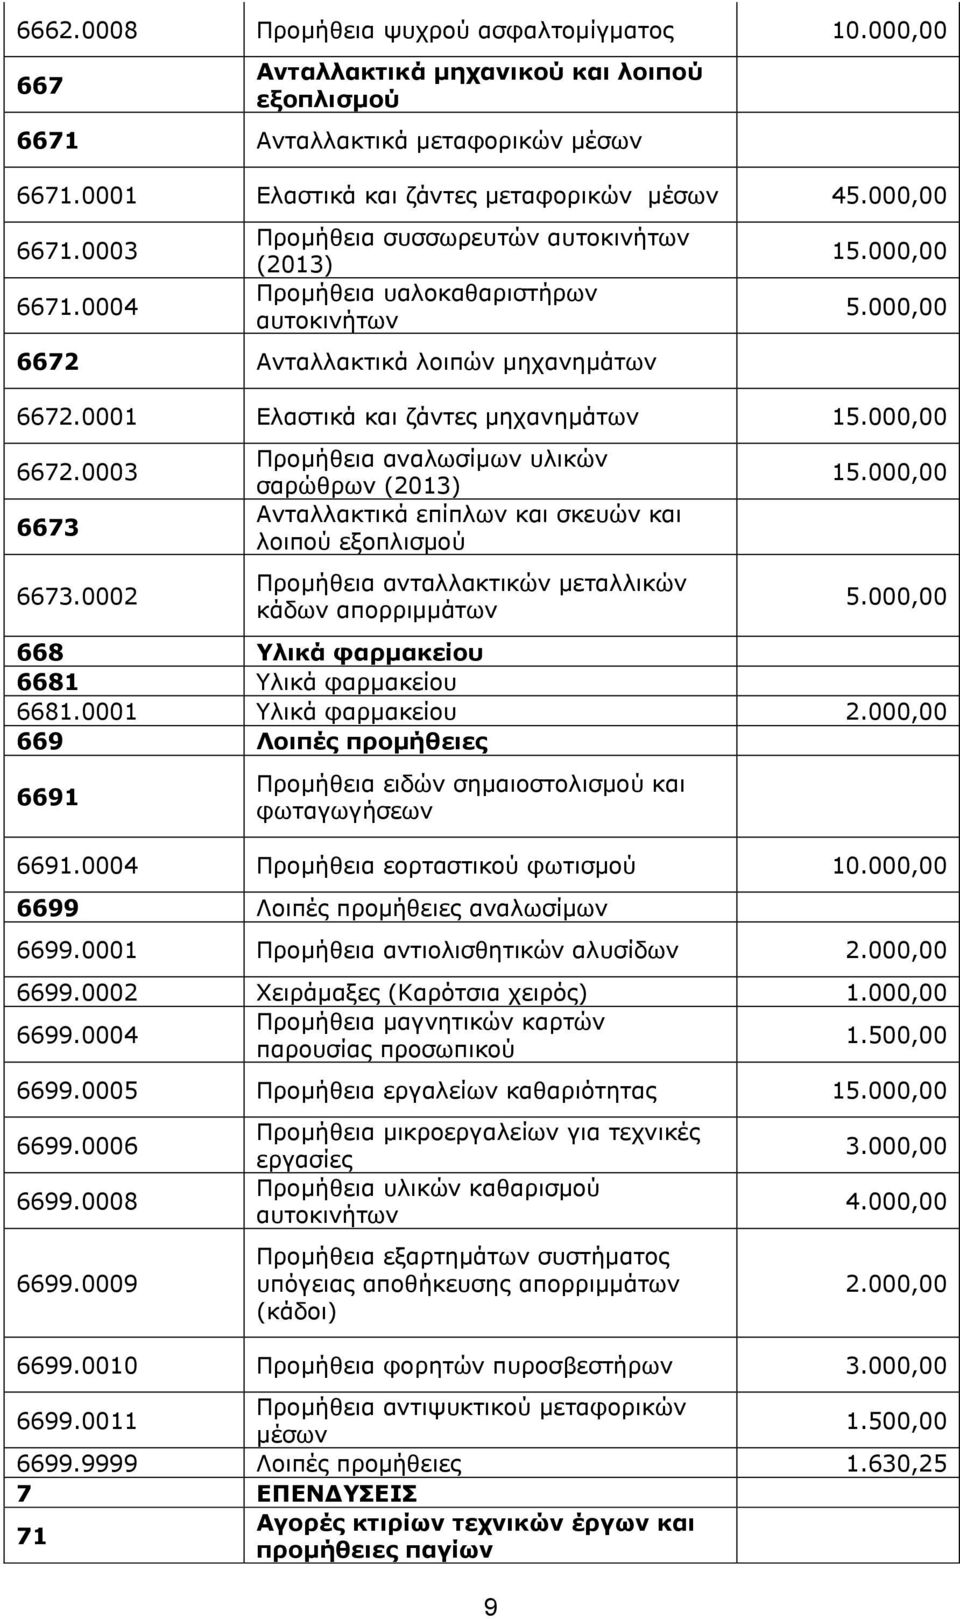 0002 Προμήθεια αναλωσίμων υλικών σαρώθρων (2013) Ανταλλακτικά επίπλων και σκευών και λοιπού εξοπλισμού Προμήθεια ανταλλακτικών μεταλλικών κάδων απορριμμάτων 9 1 668 Υλικά φαρμακείου 6681 Υλικά